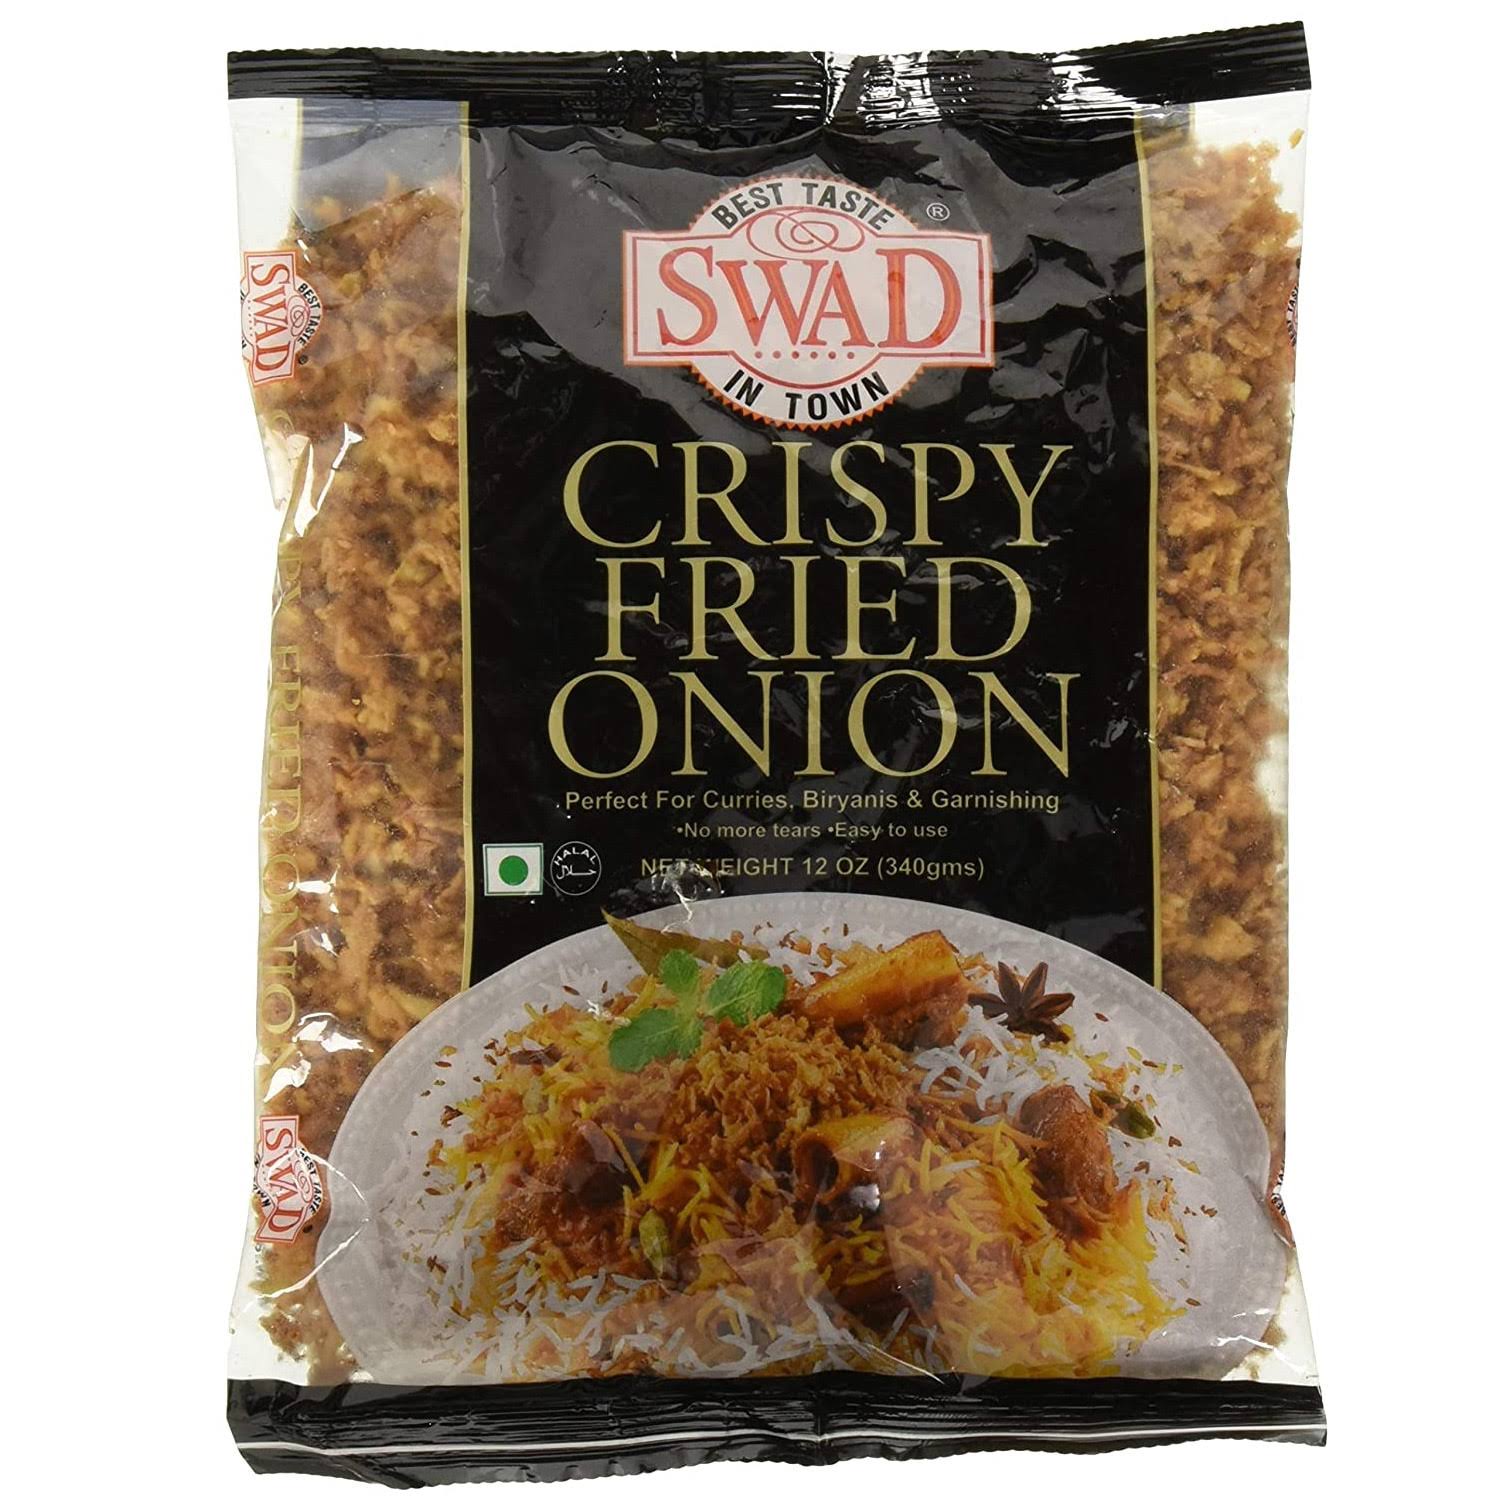 Swad Crispy Fried ONION. 12oz Bag